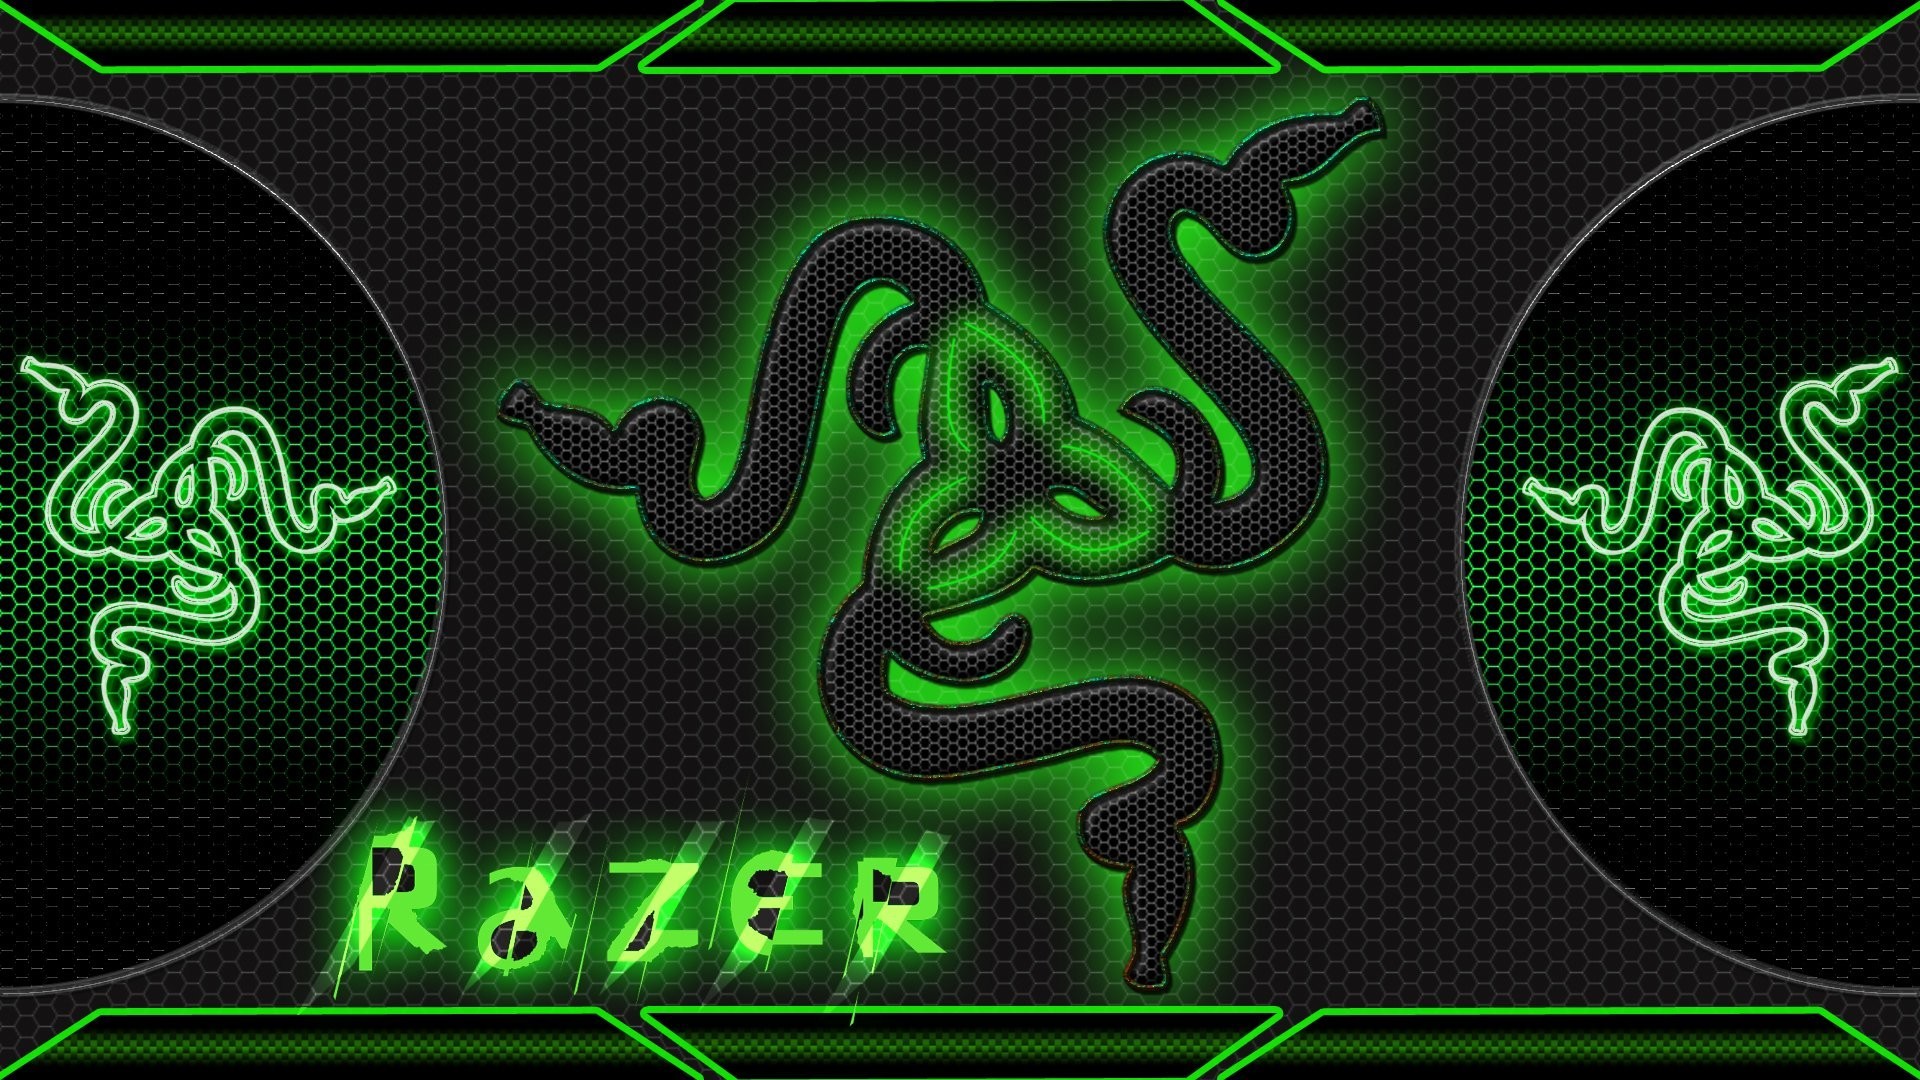 Chào mừng bạn đến với thế giới đẳng cấp của Razer, nơi mà trò chơi điện tử và công nghệ xuất sắc giao thoa. Hãy cùng xem các sản phẩm mới nhất cùng với những đường nét đặc trưng thu hút sự chú ý. Hãy trải nghiệm sự mạnh mẽ và tiện nghi của Razer ngay hôm nay.